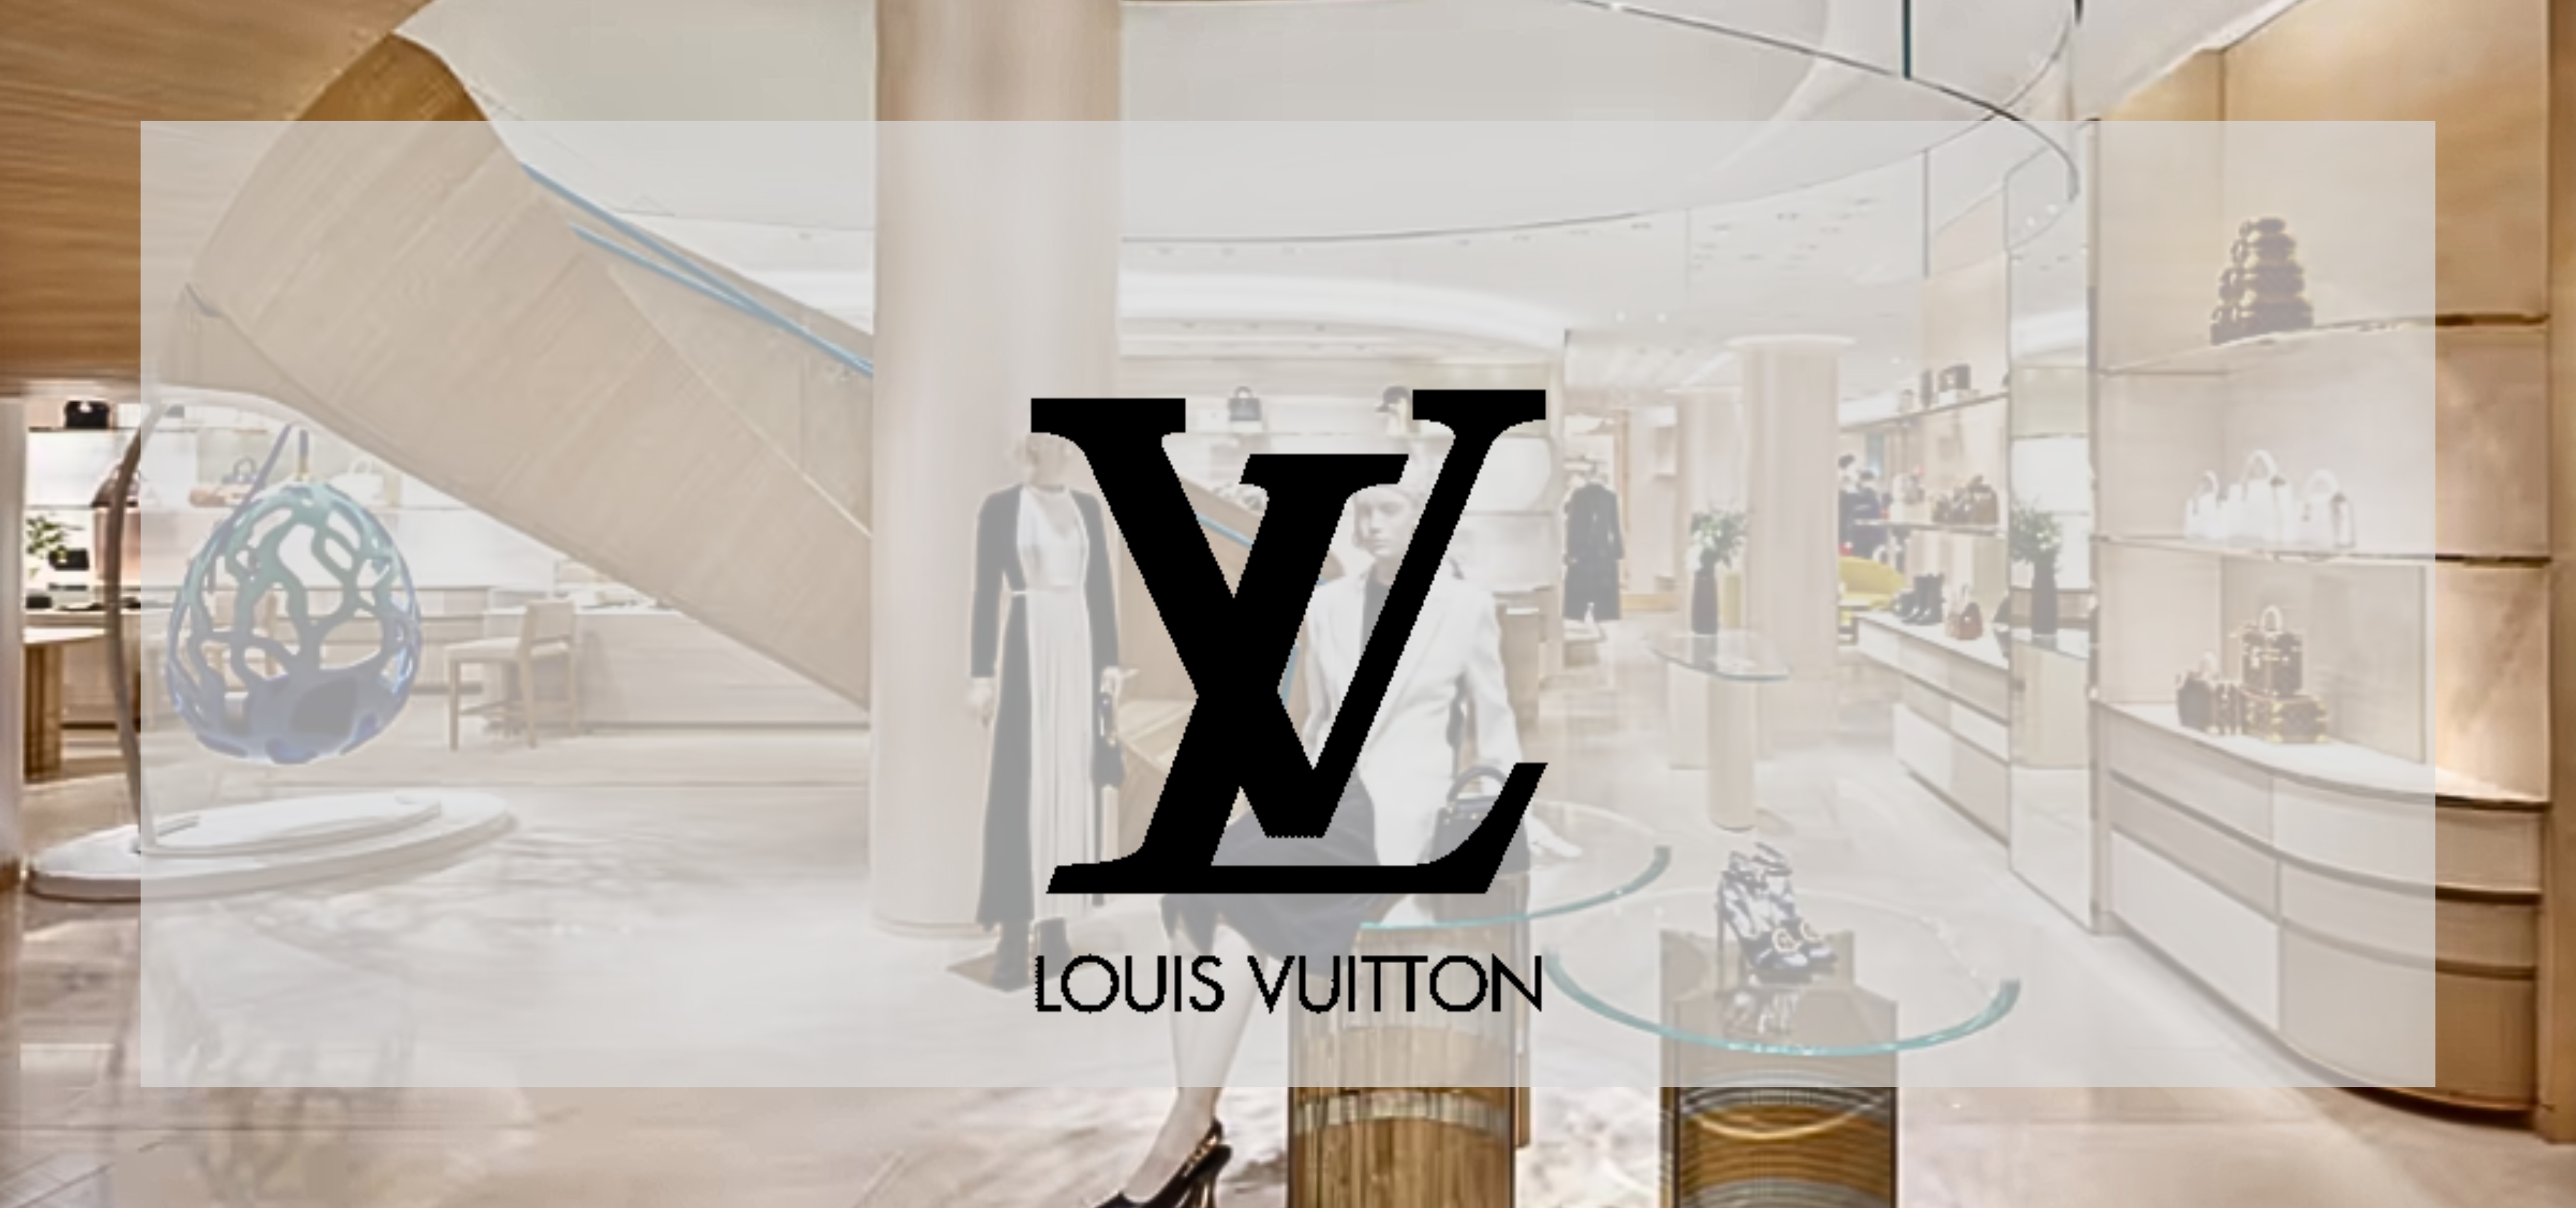 Louis Vuitton Project Image